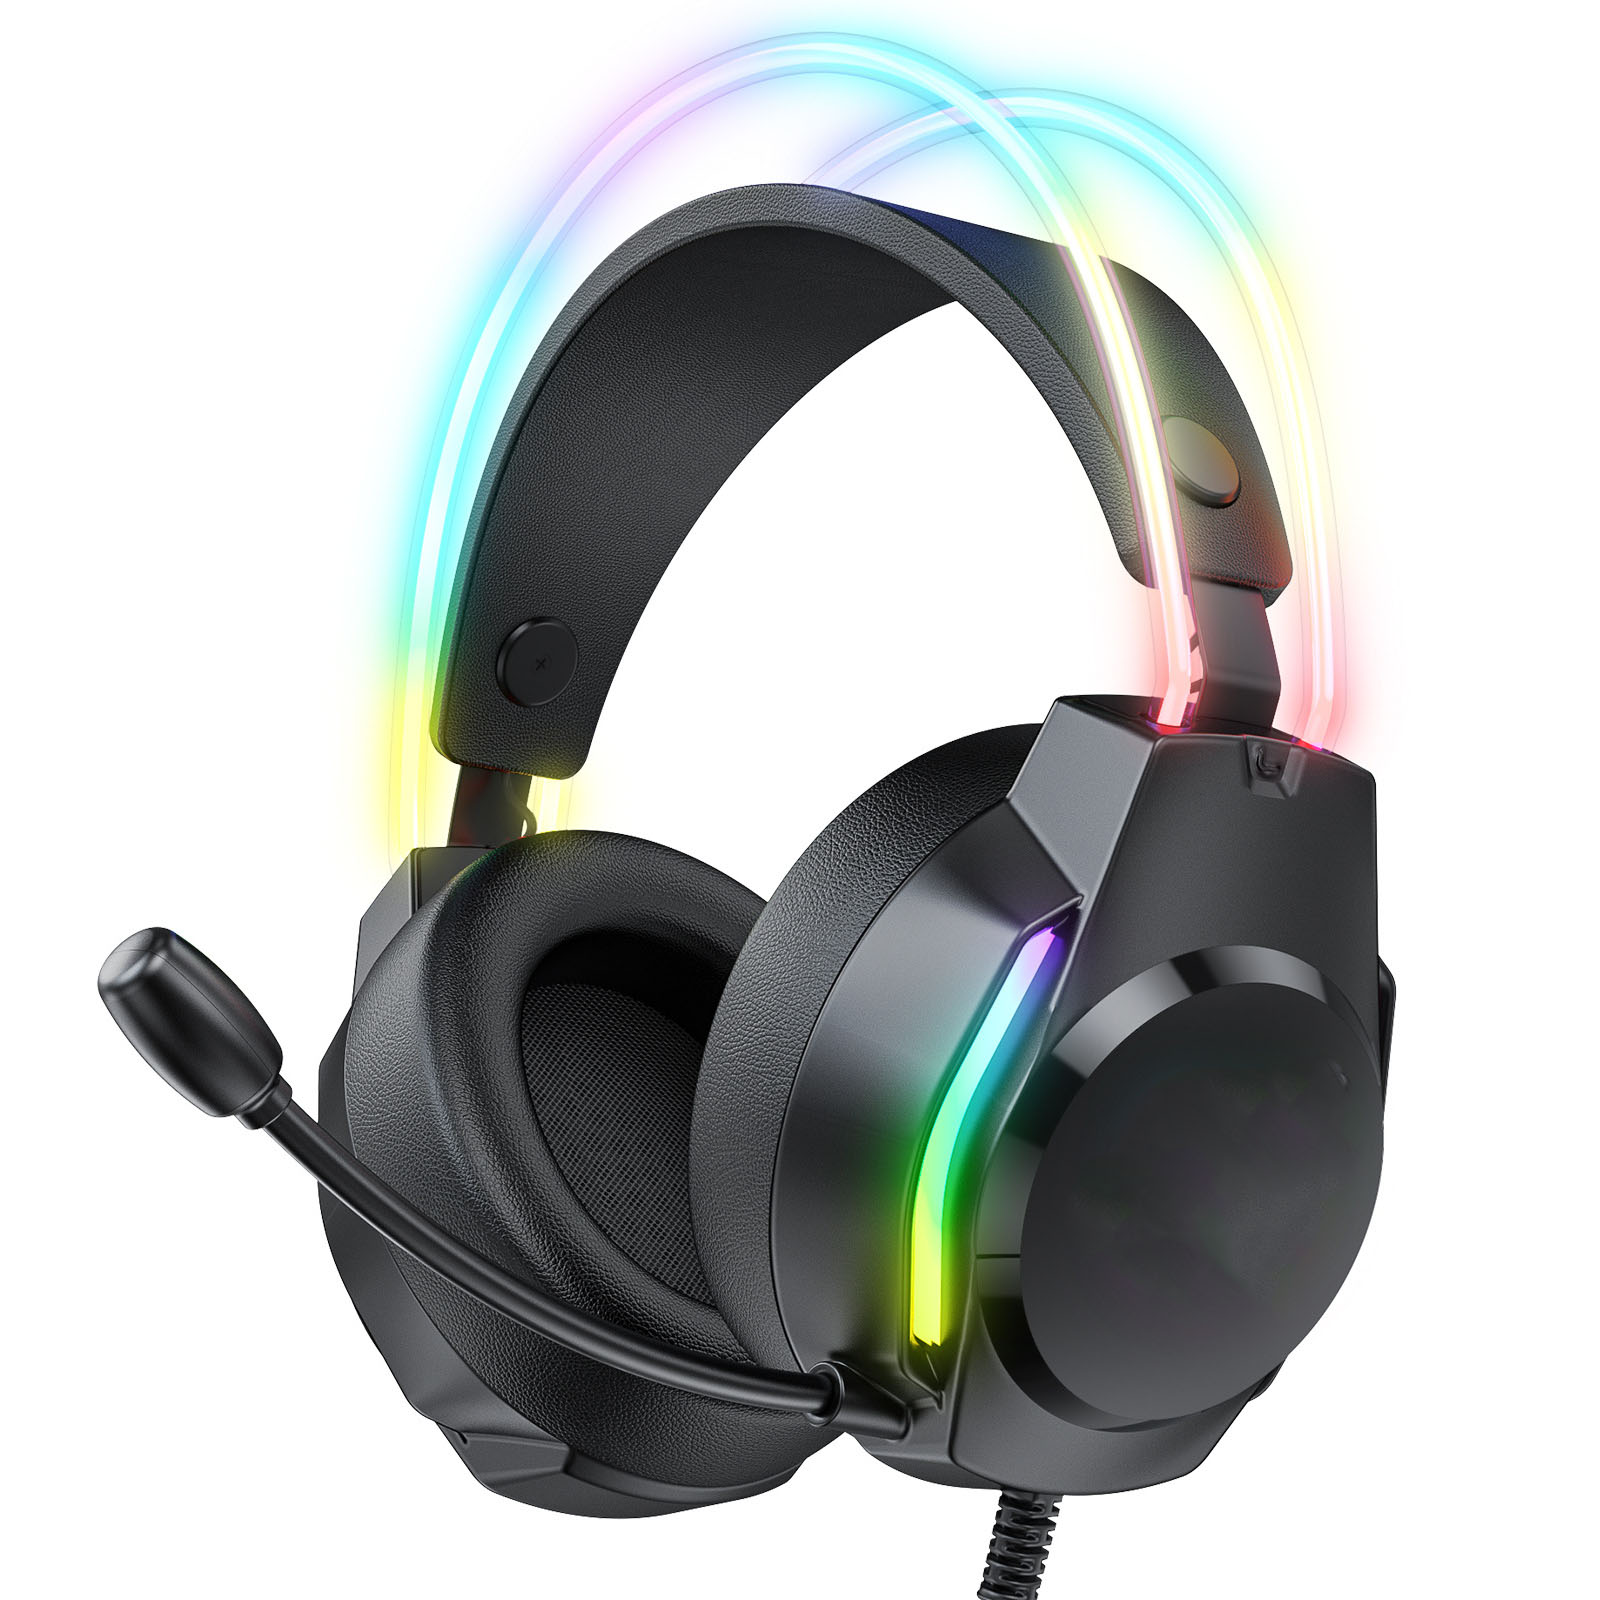 BRIGHTAKE Surround Sound Gaming Headset, Over-ear Schwarz Komfort, Mehrfachkompatibilität, Geräuschunterdrückung, Kopfhörer RGB